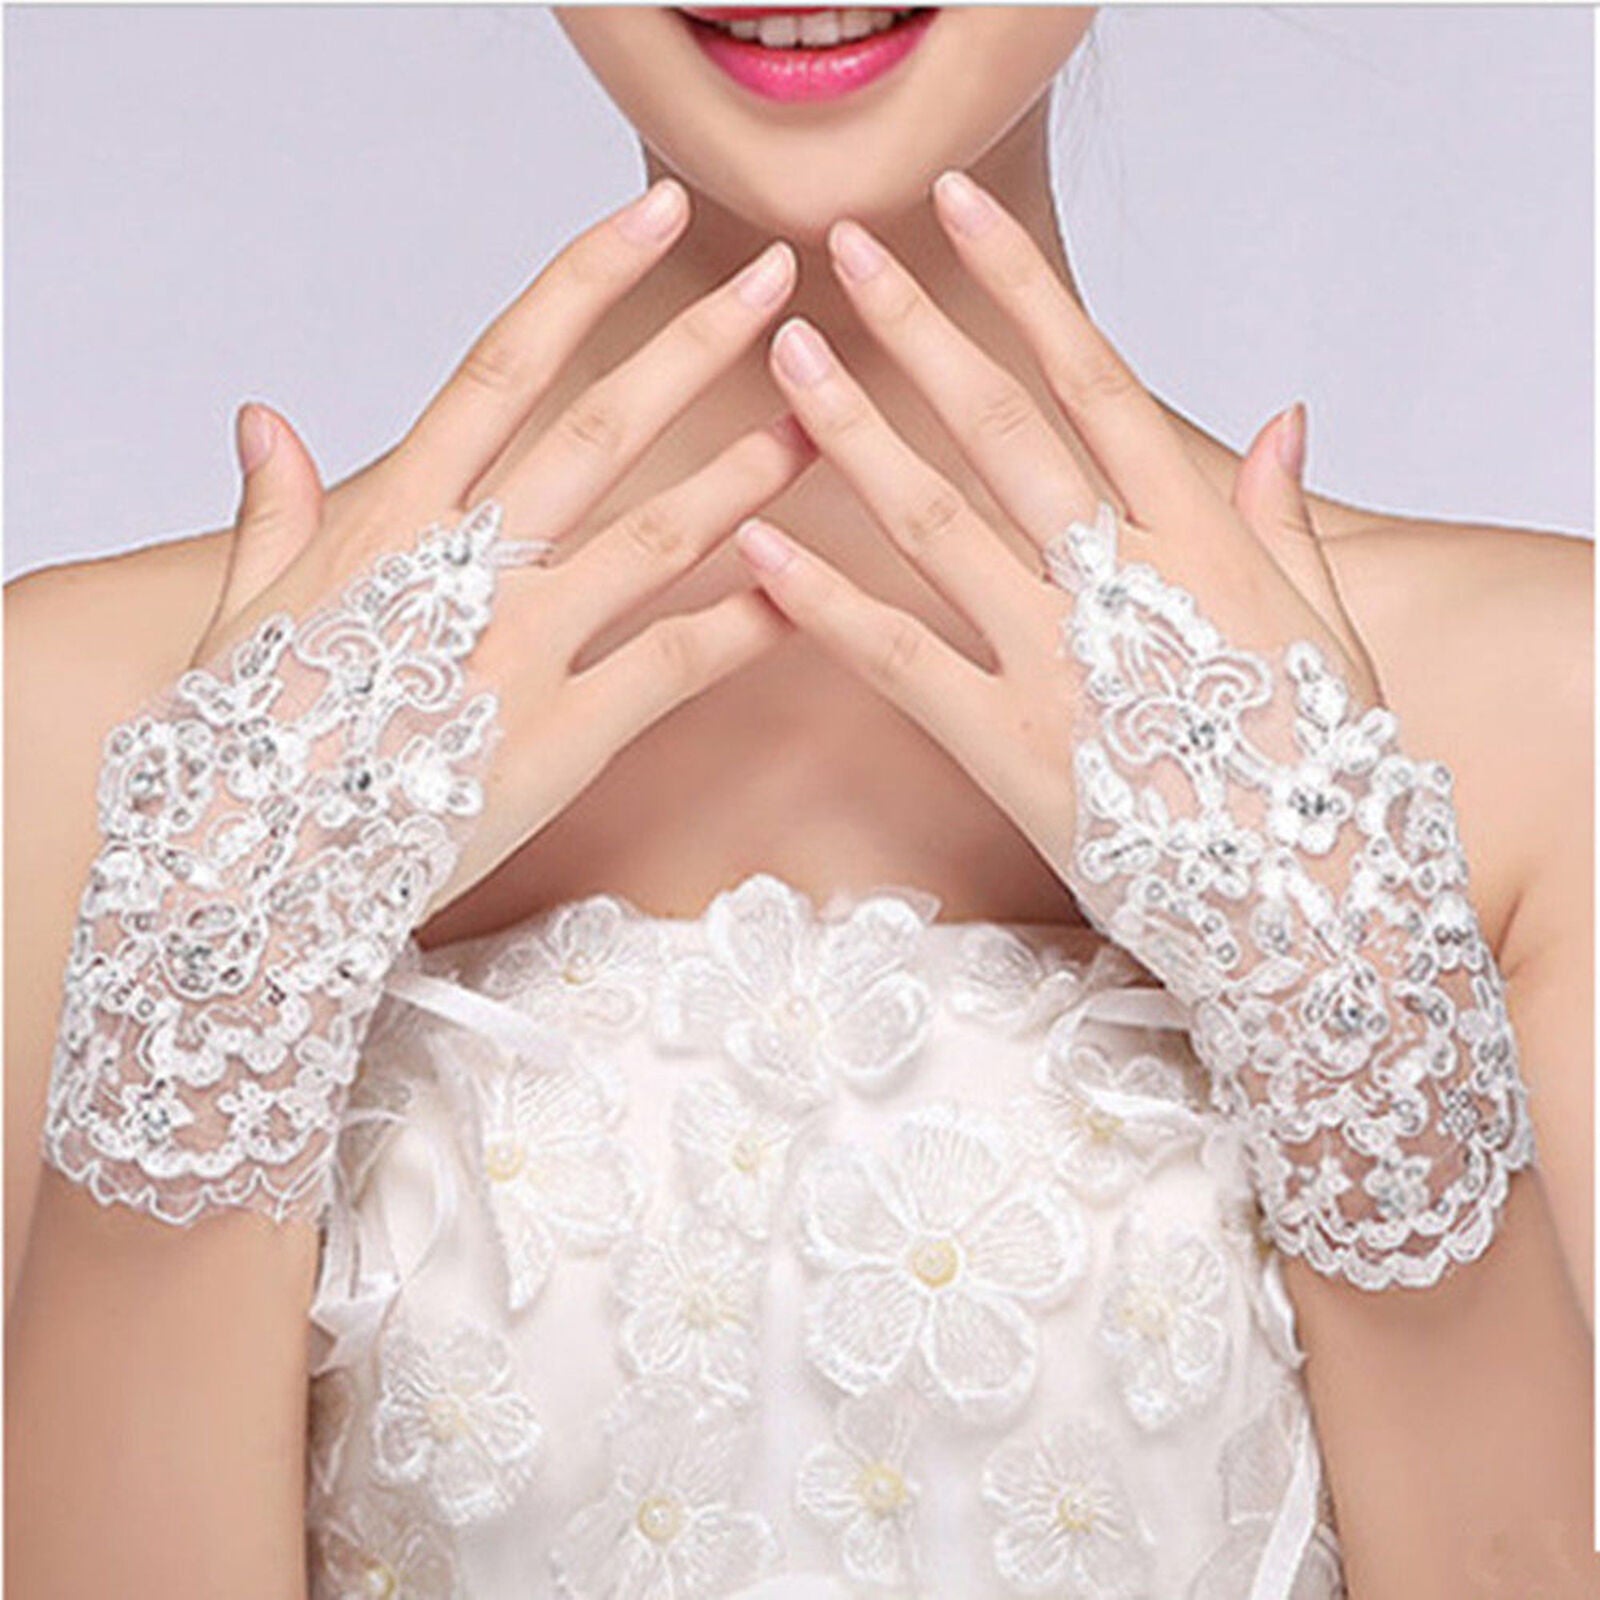 Stylish Party Fingerless Lace Short Paragraph Rhinestone Bridal Wedding Gloves